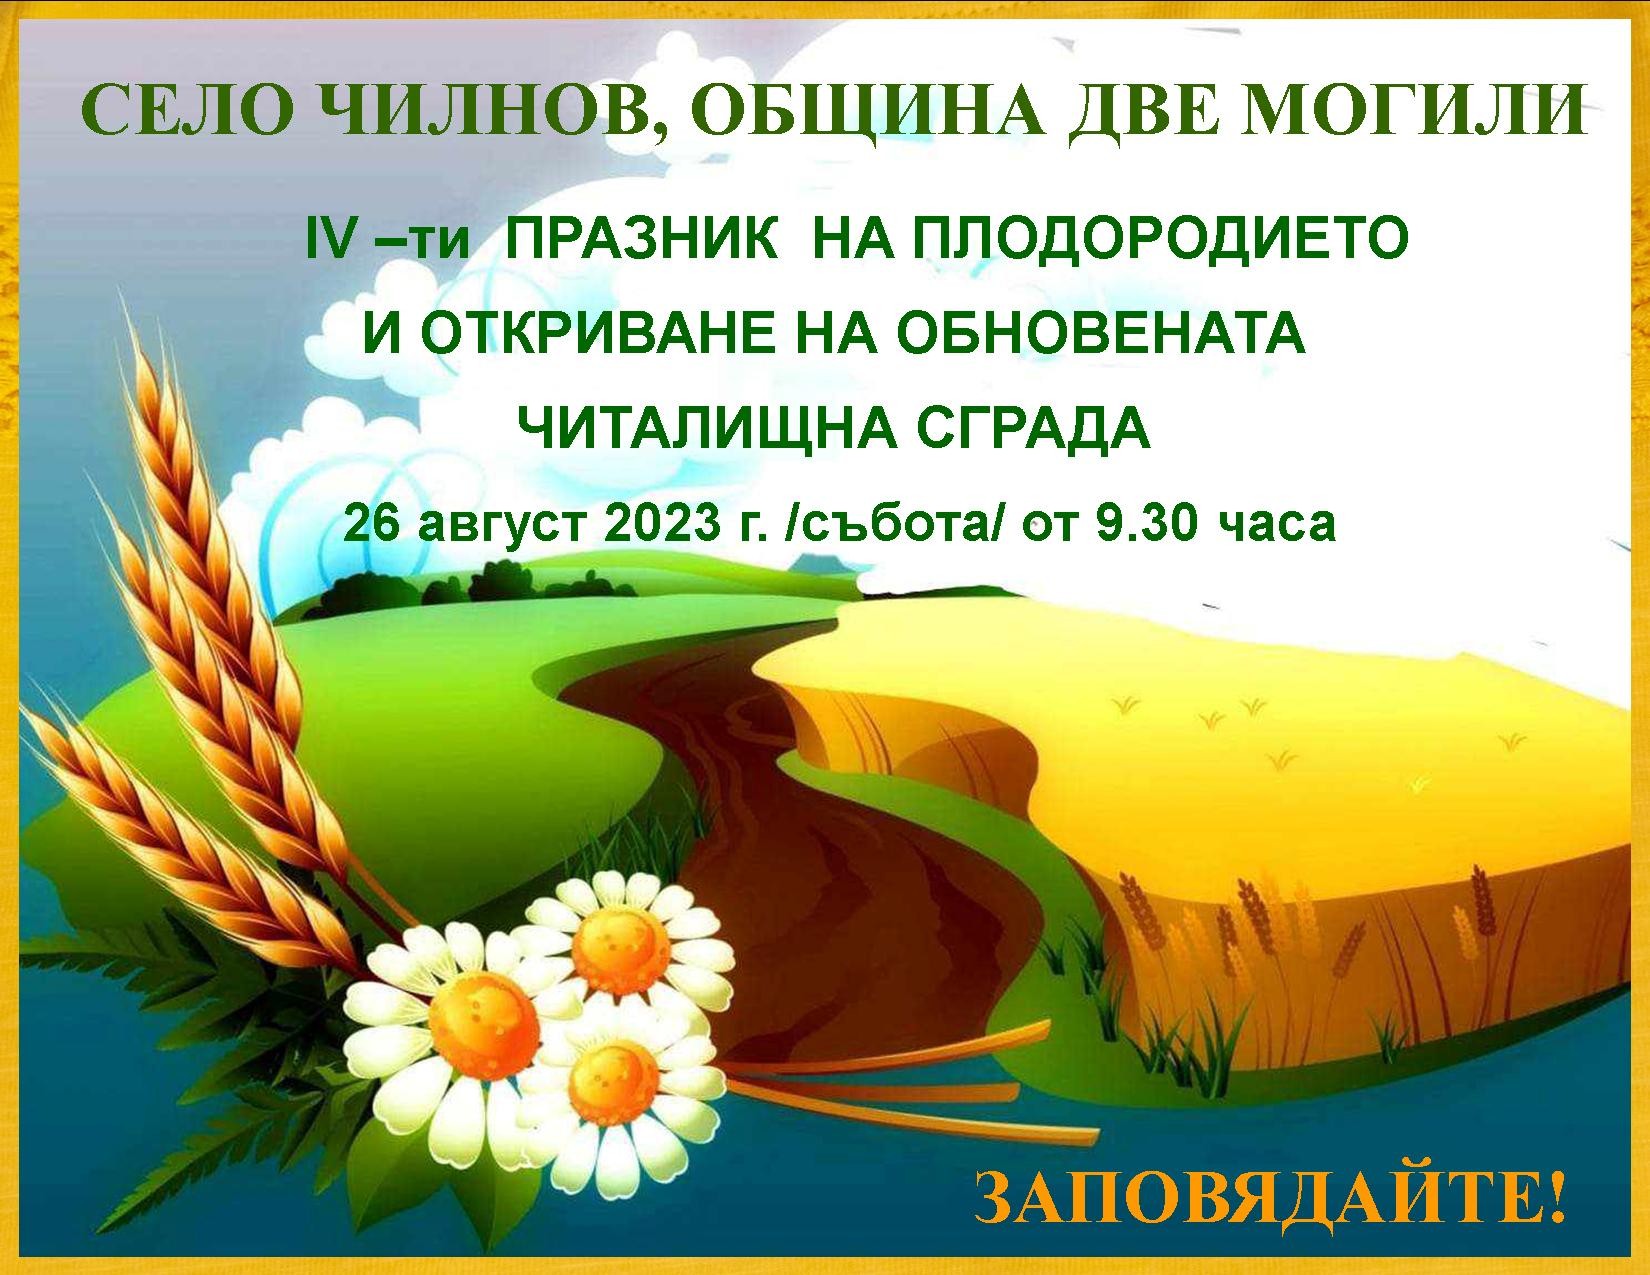 Канят  на ,,Празник на плодородието,, в село Чилнов